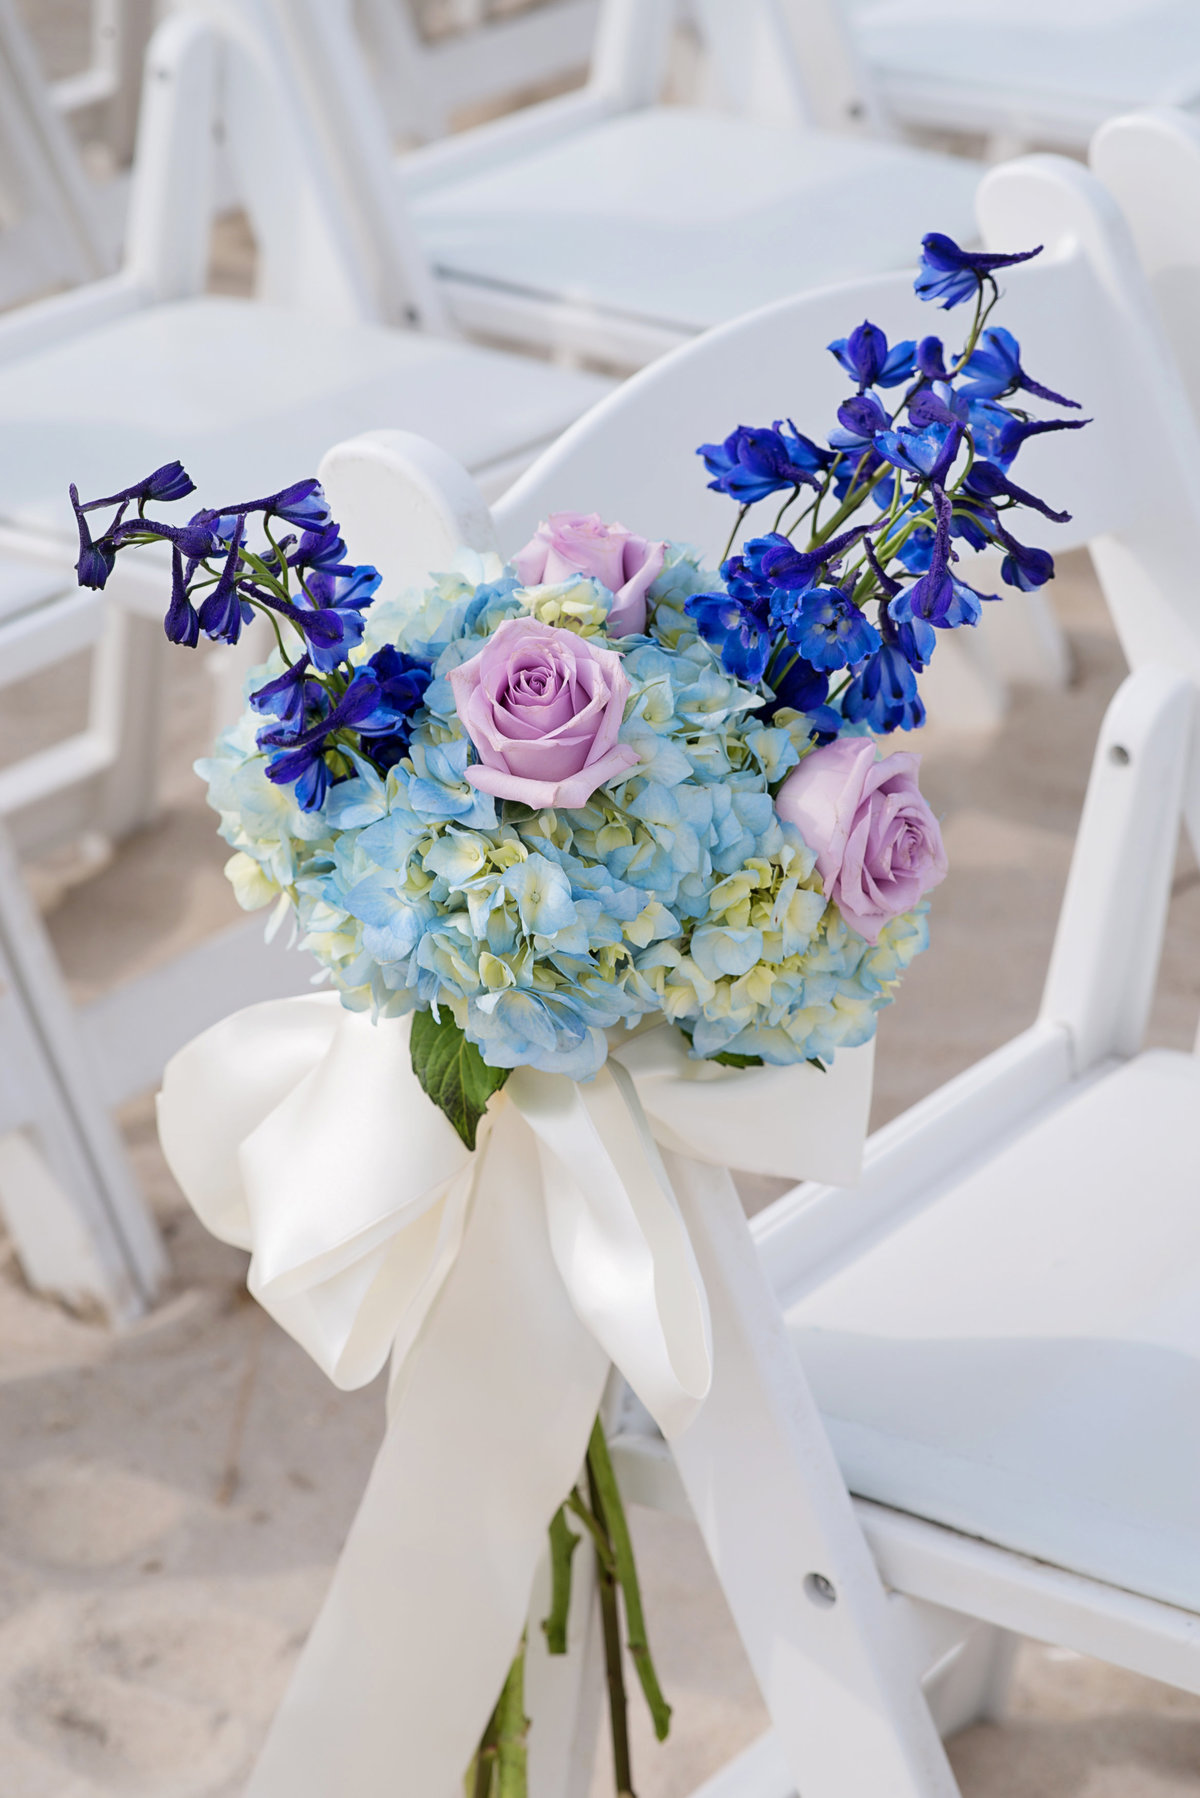 Hydrangea wedding floral decor